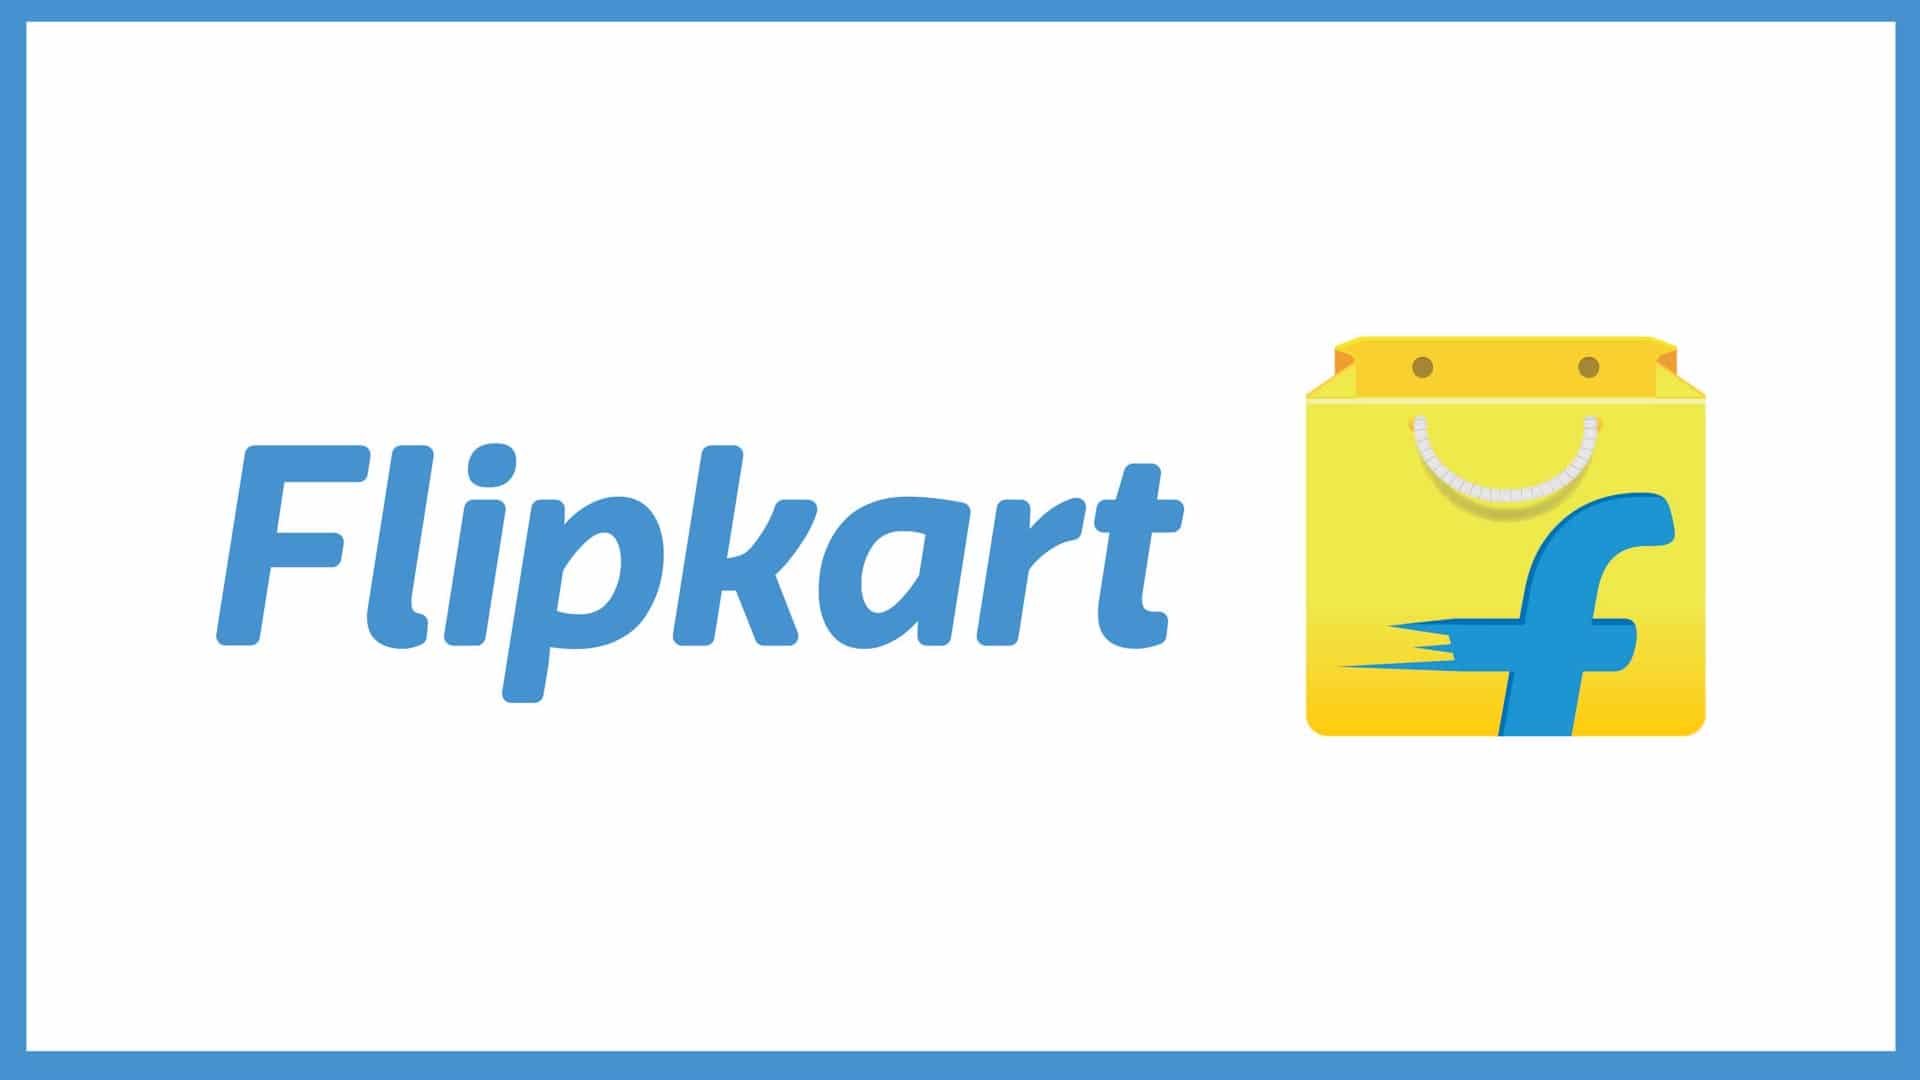 Flipkart Free Delivery Trick